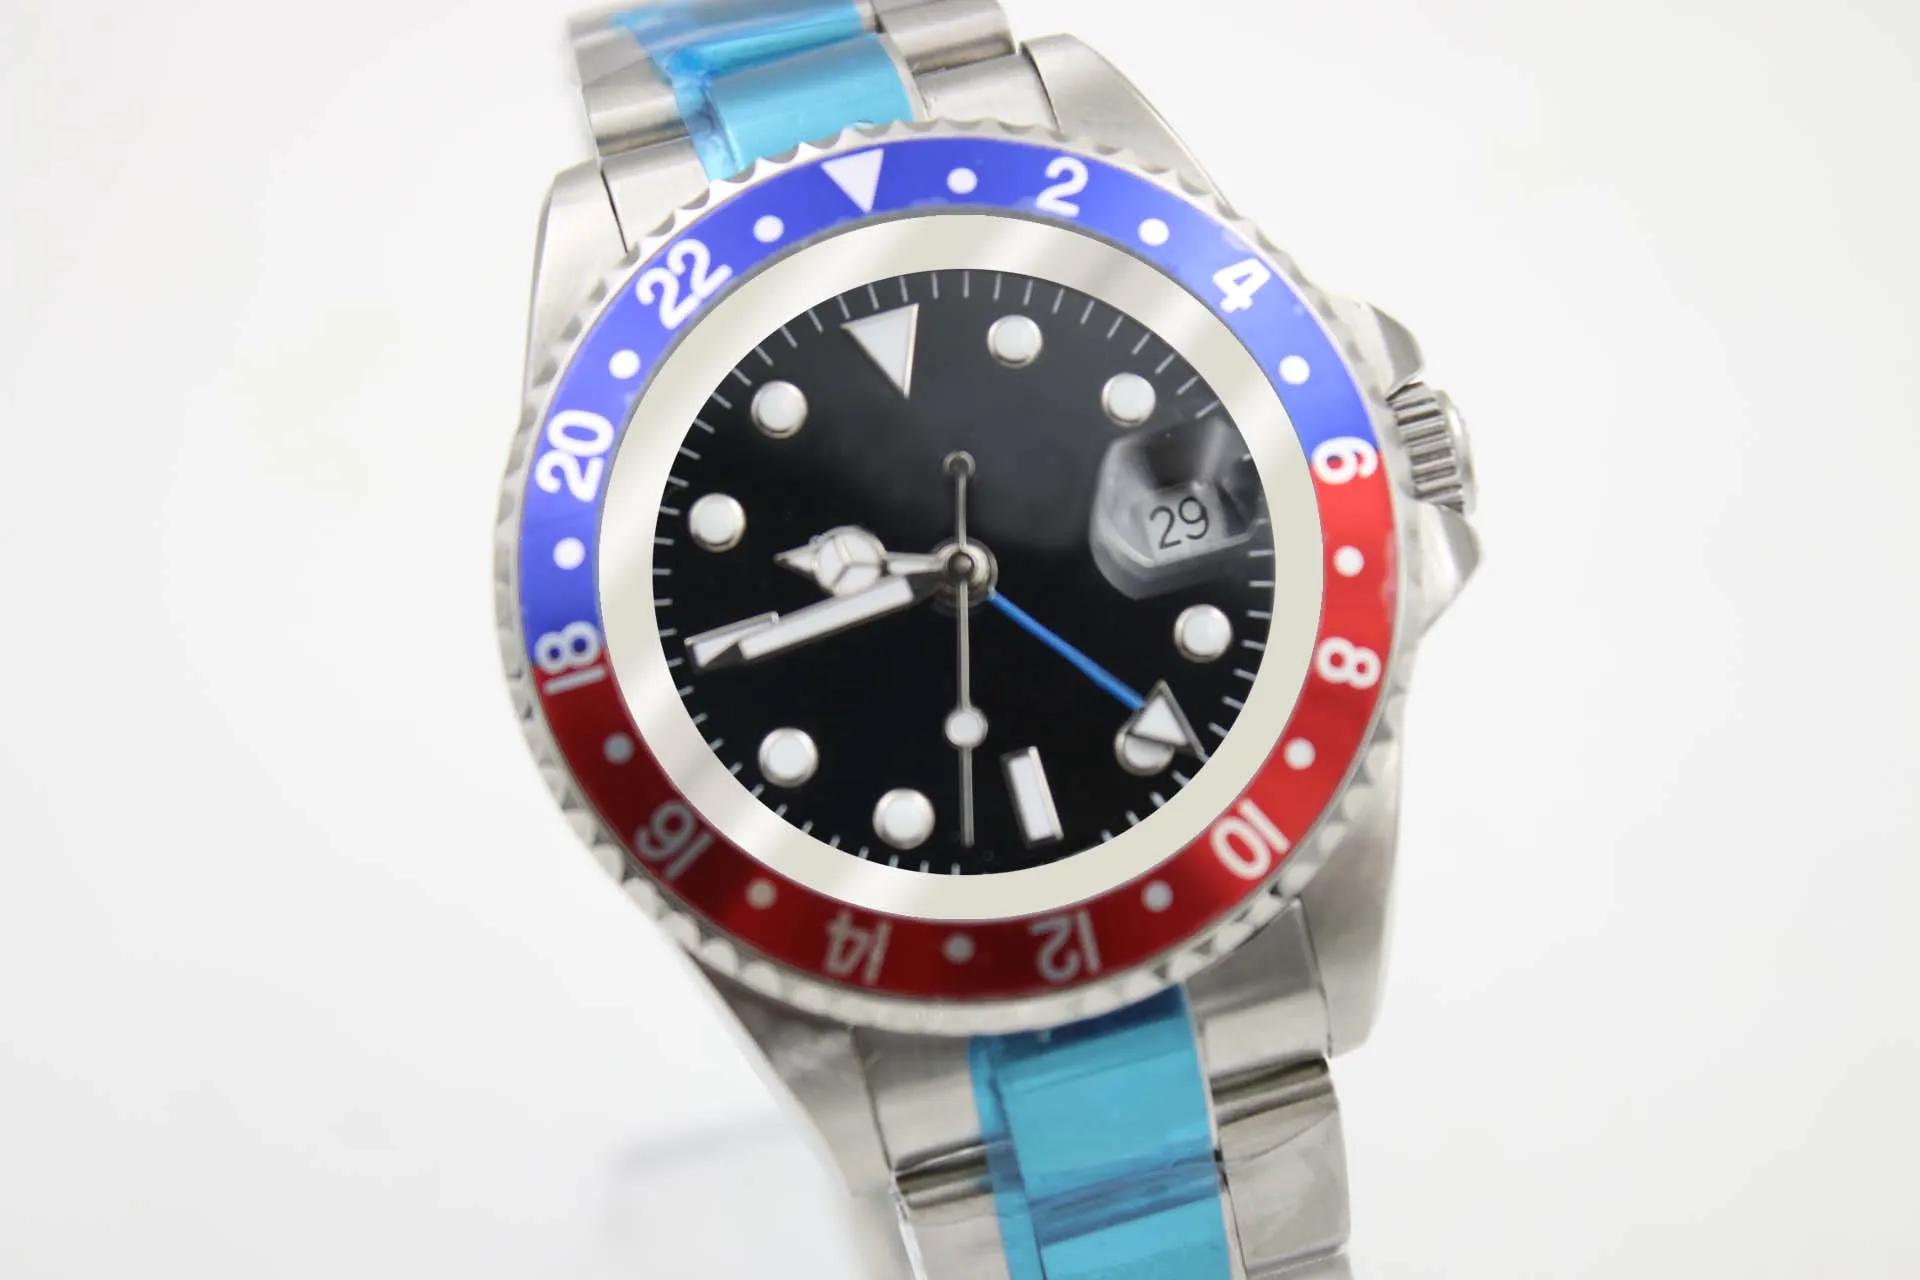 Relógio mecânico masculino 116710 negócios casual moderno prata branco caixa de aço inoxidável azul vermelho aro preto mostrador 4 pinos calendar328c